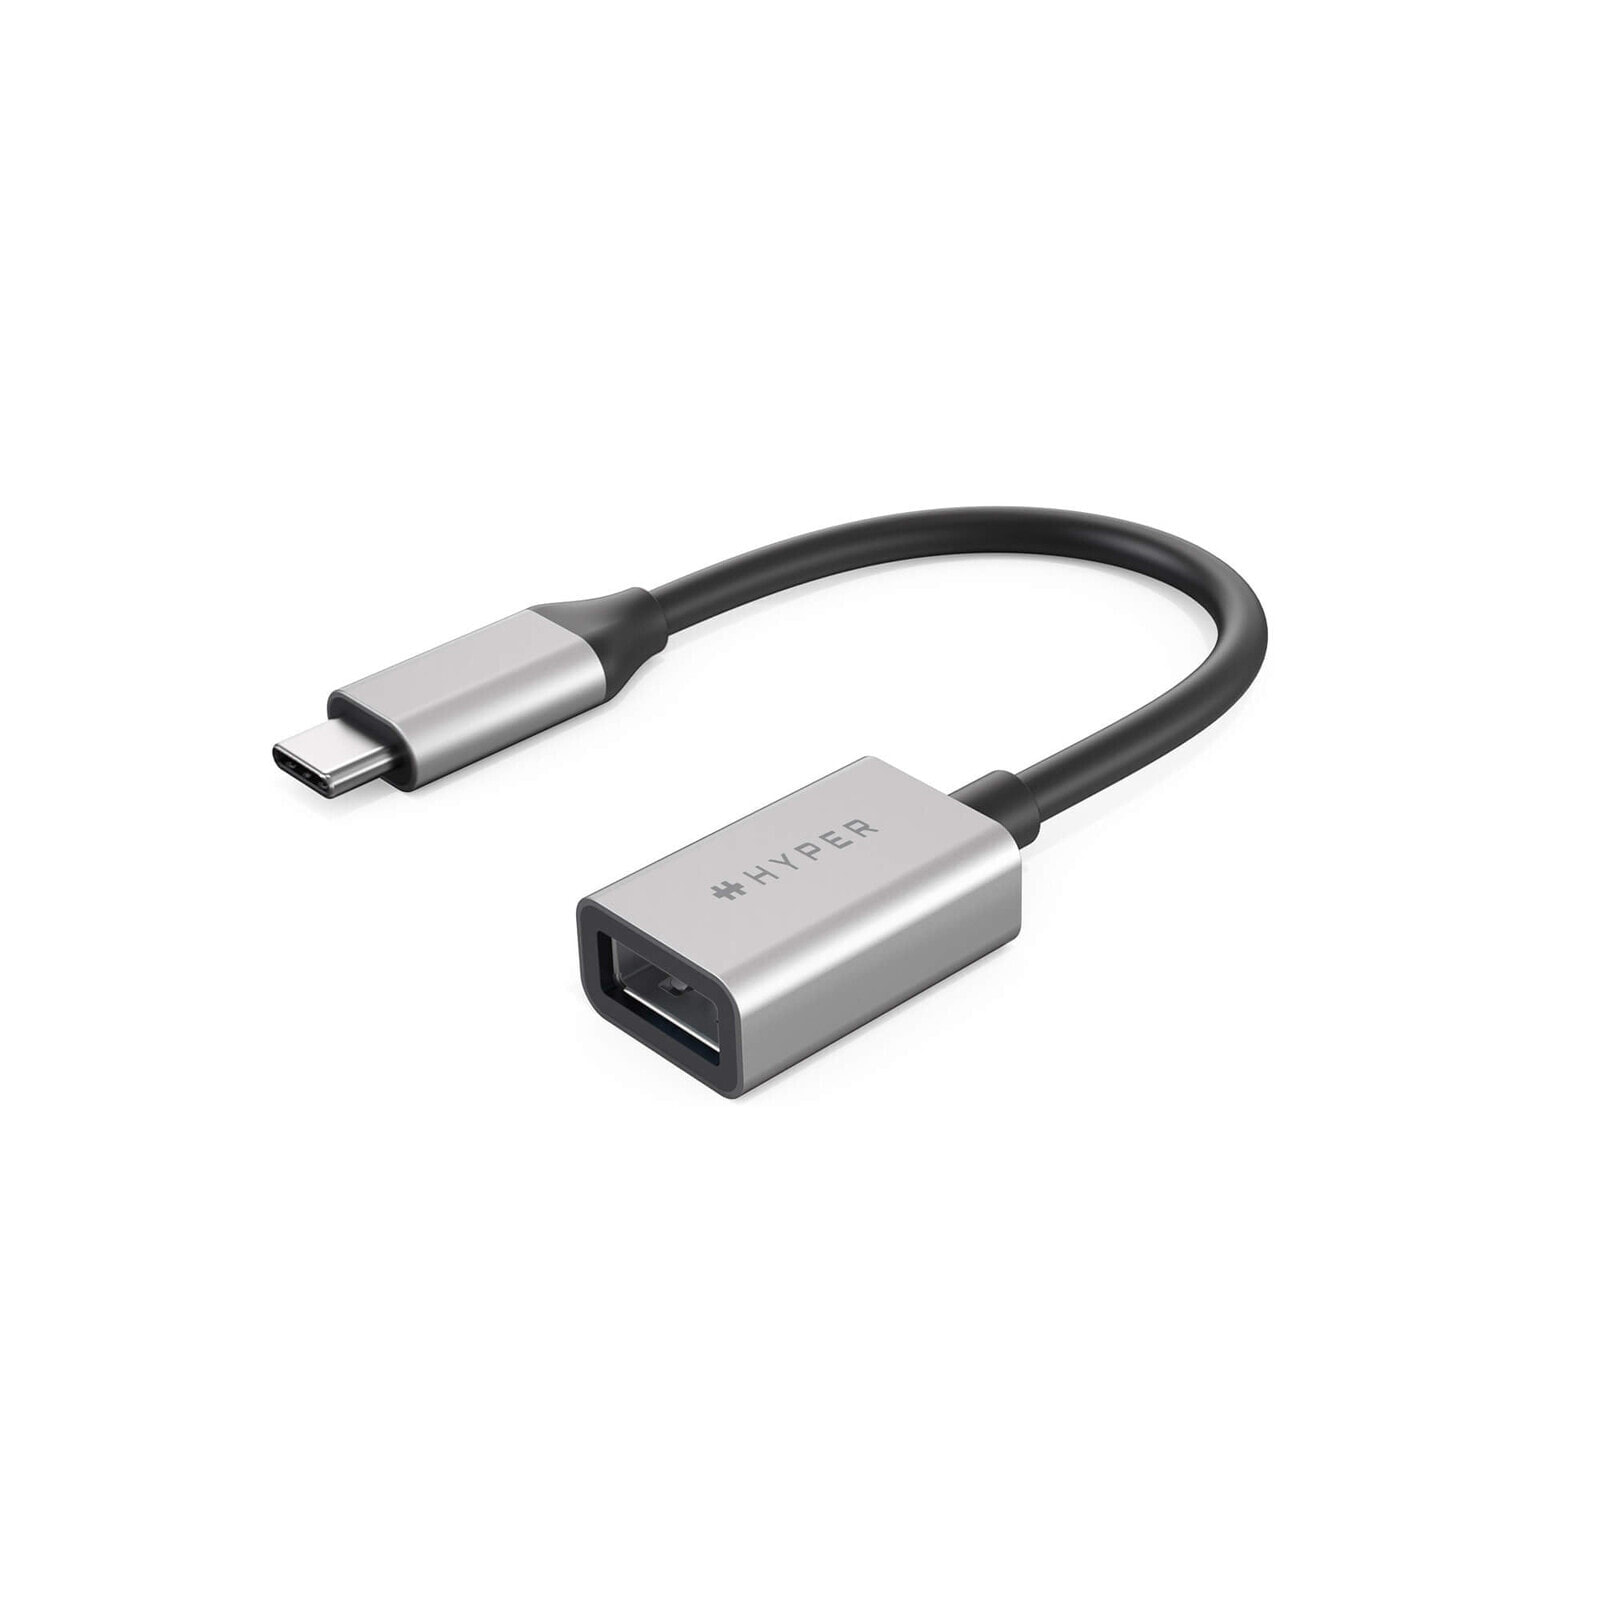 HYPER HD425D-GL - 0.0176 m - USB C - USB A - USB 3.2 Gen 2 (3.1 Gen 2) - Black - Silver